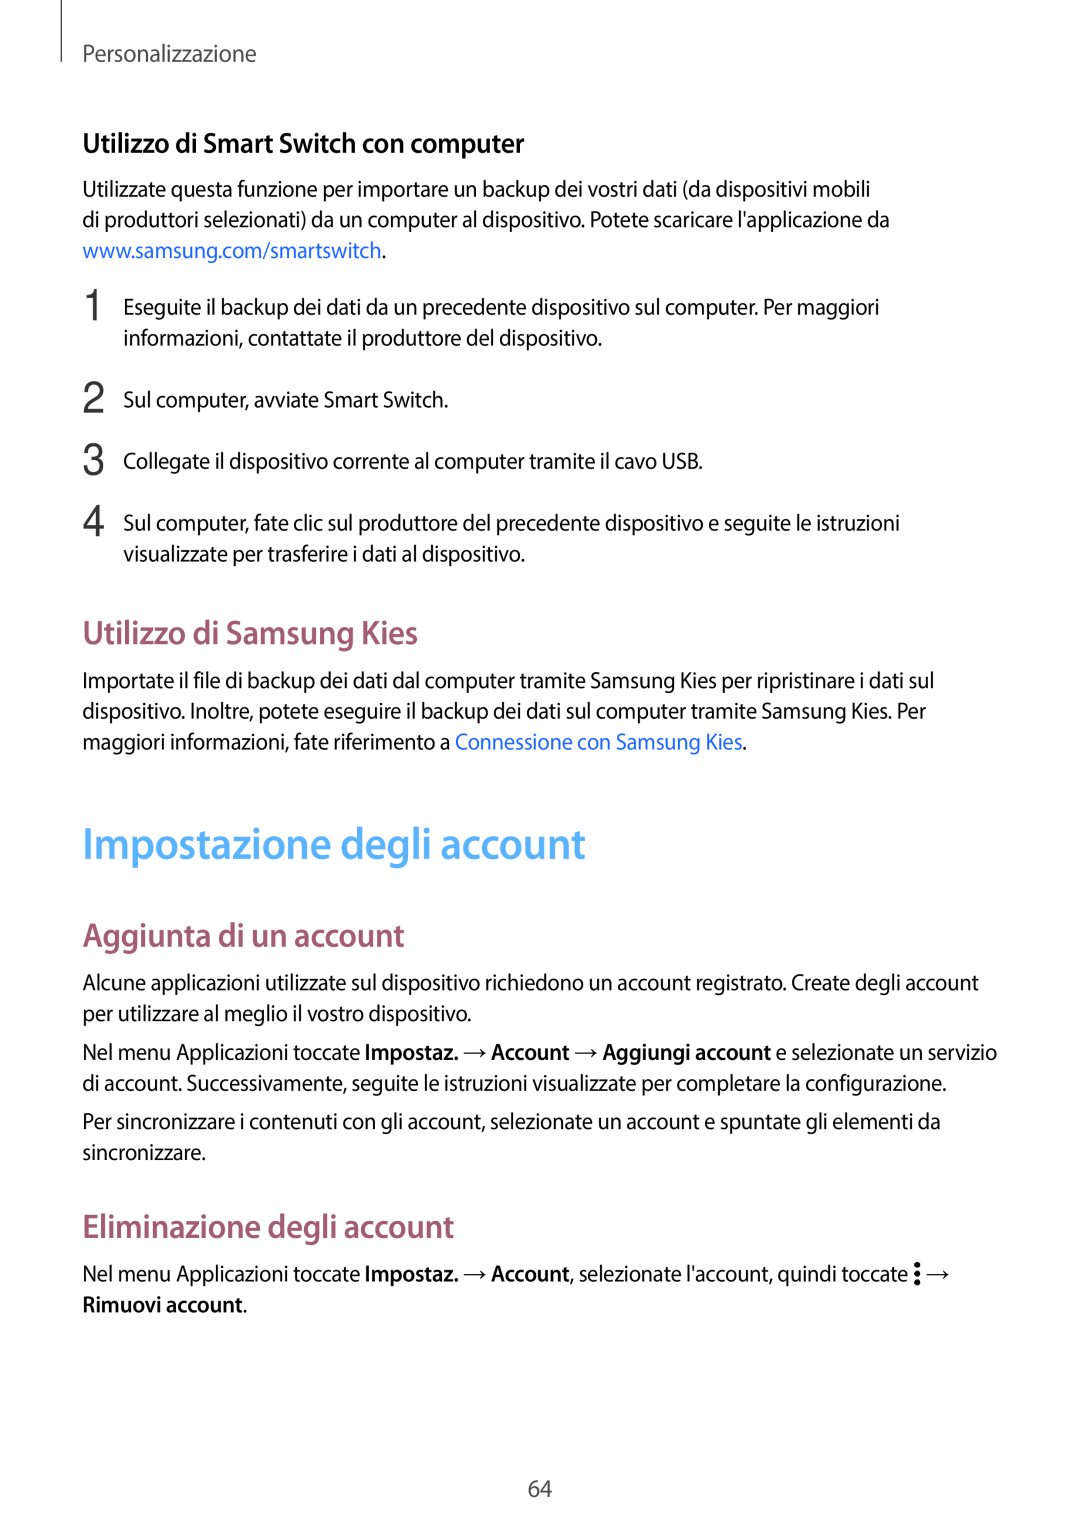 Samsung SM-G800FZKATIM Impostazione degli account, Utilizzo di Samsung Kies, Aggiunta di un account, Personalizzazione 